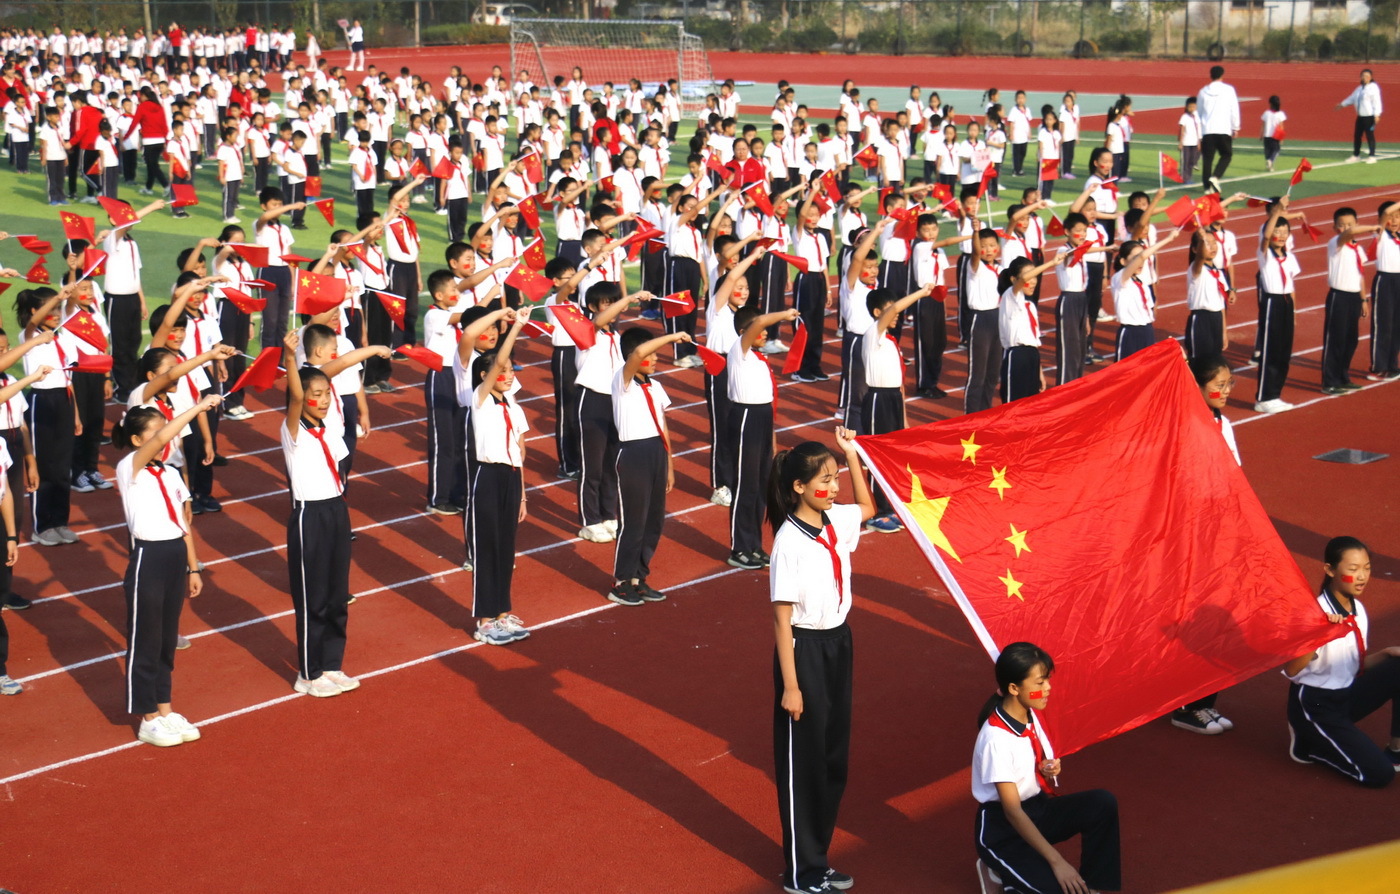 山东滨州:1364名小学生升国旗唱国歌 祝福祖国70诞辰